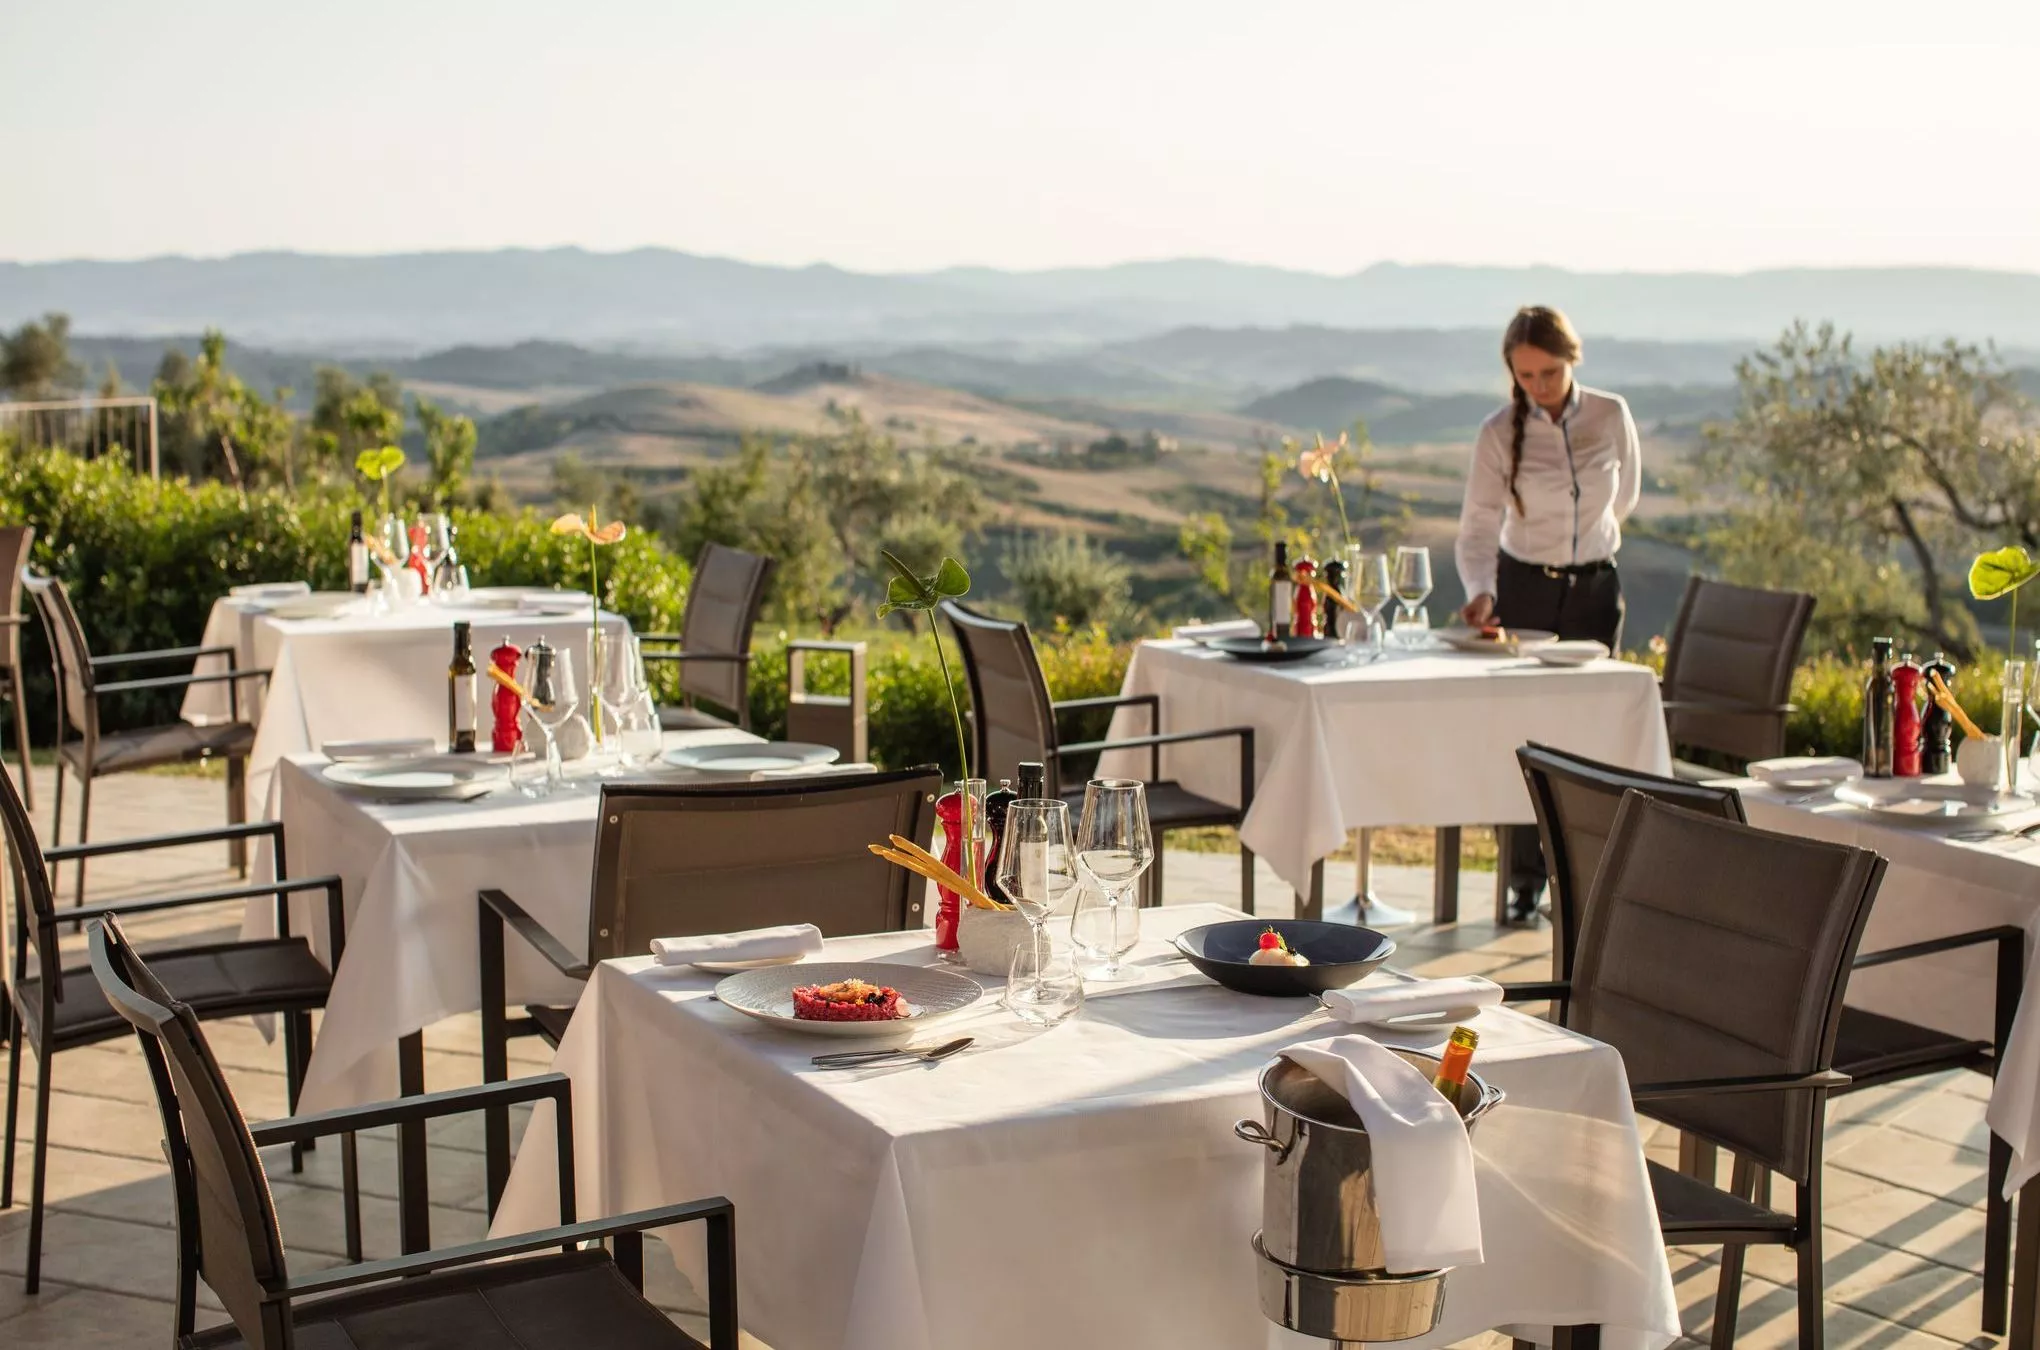 Authentische italienische Küche wird im hoteleigenen Restaurant "La Via del Sale" serviert